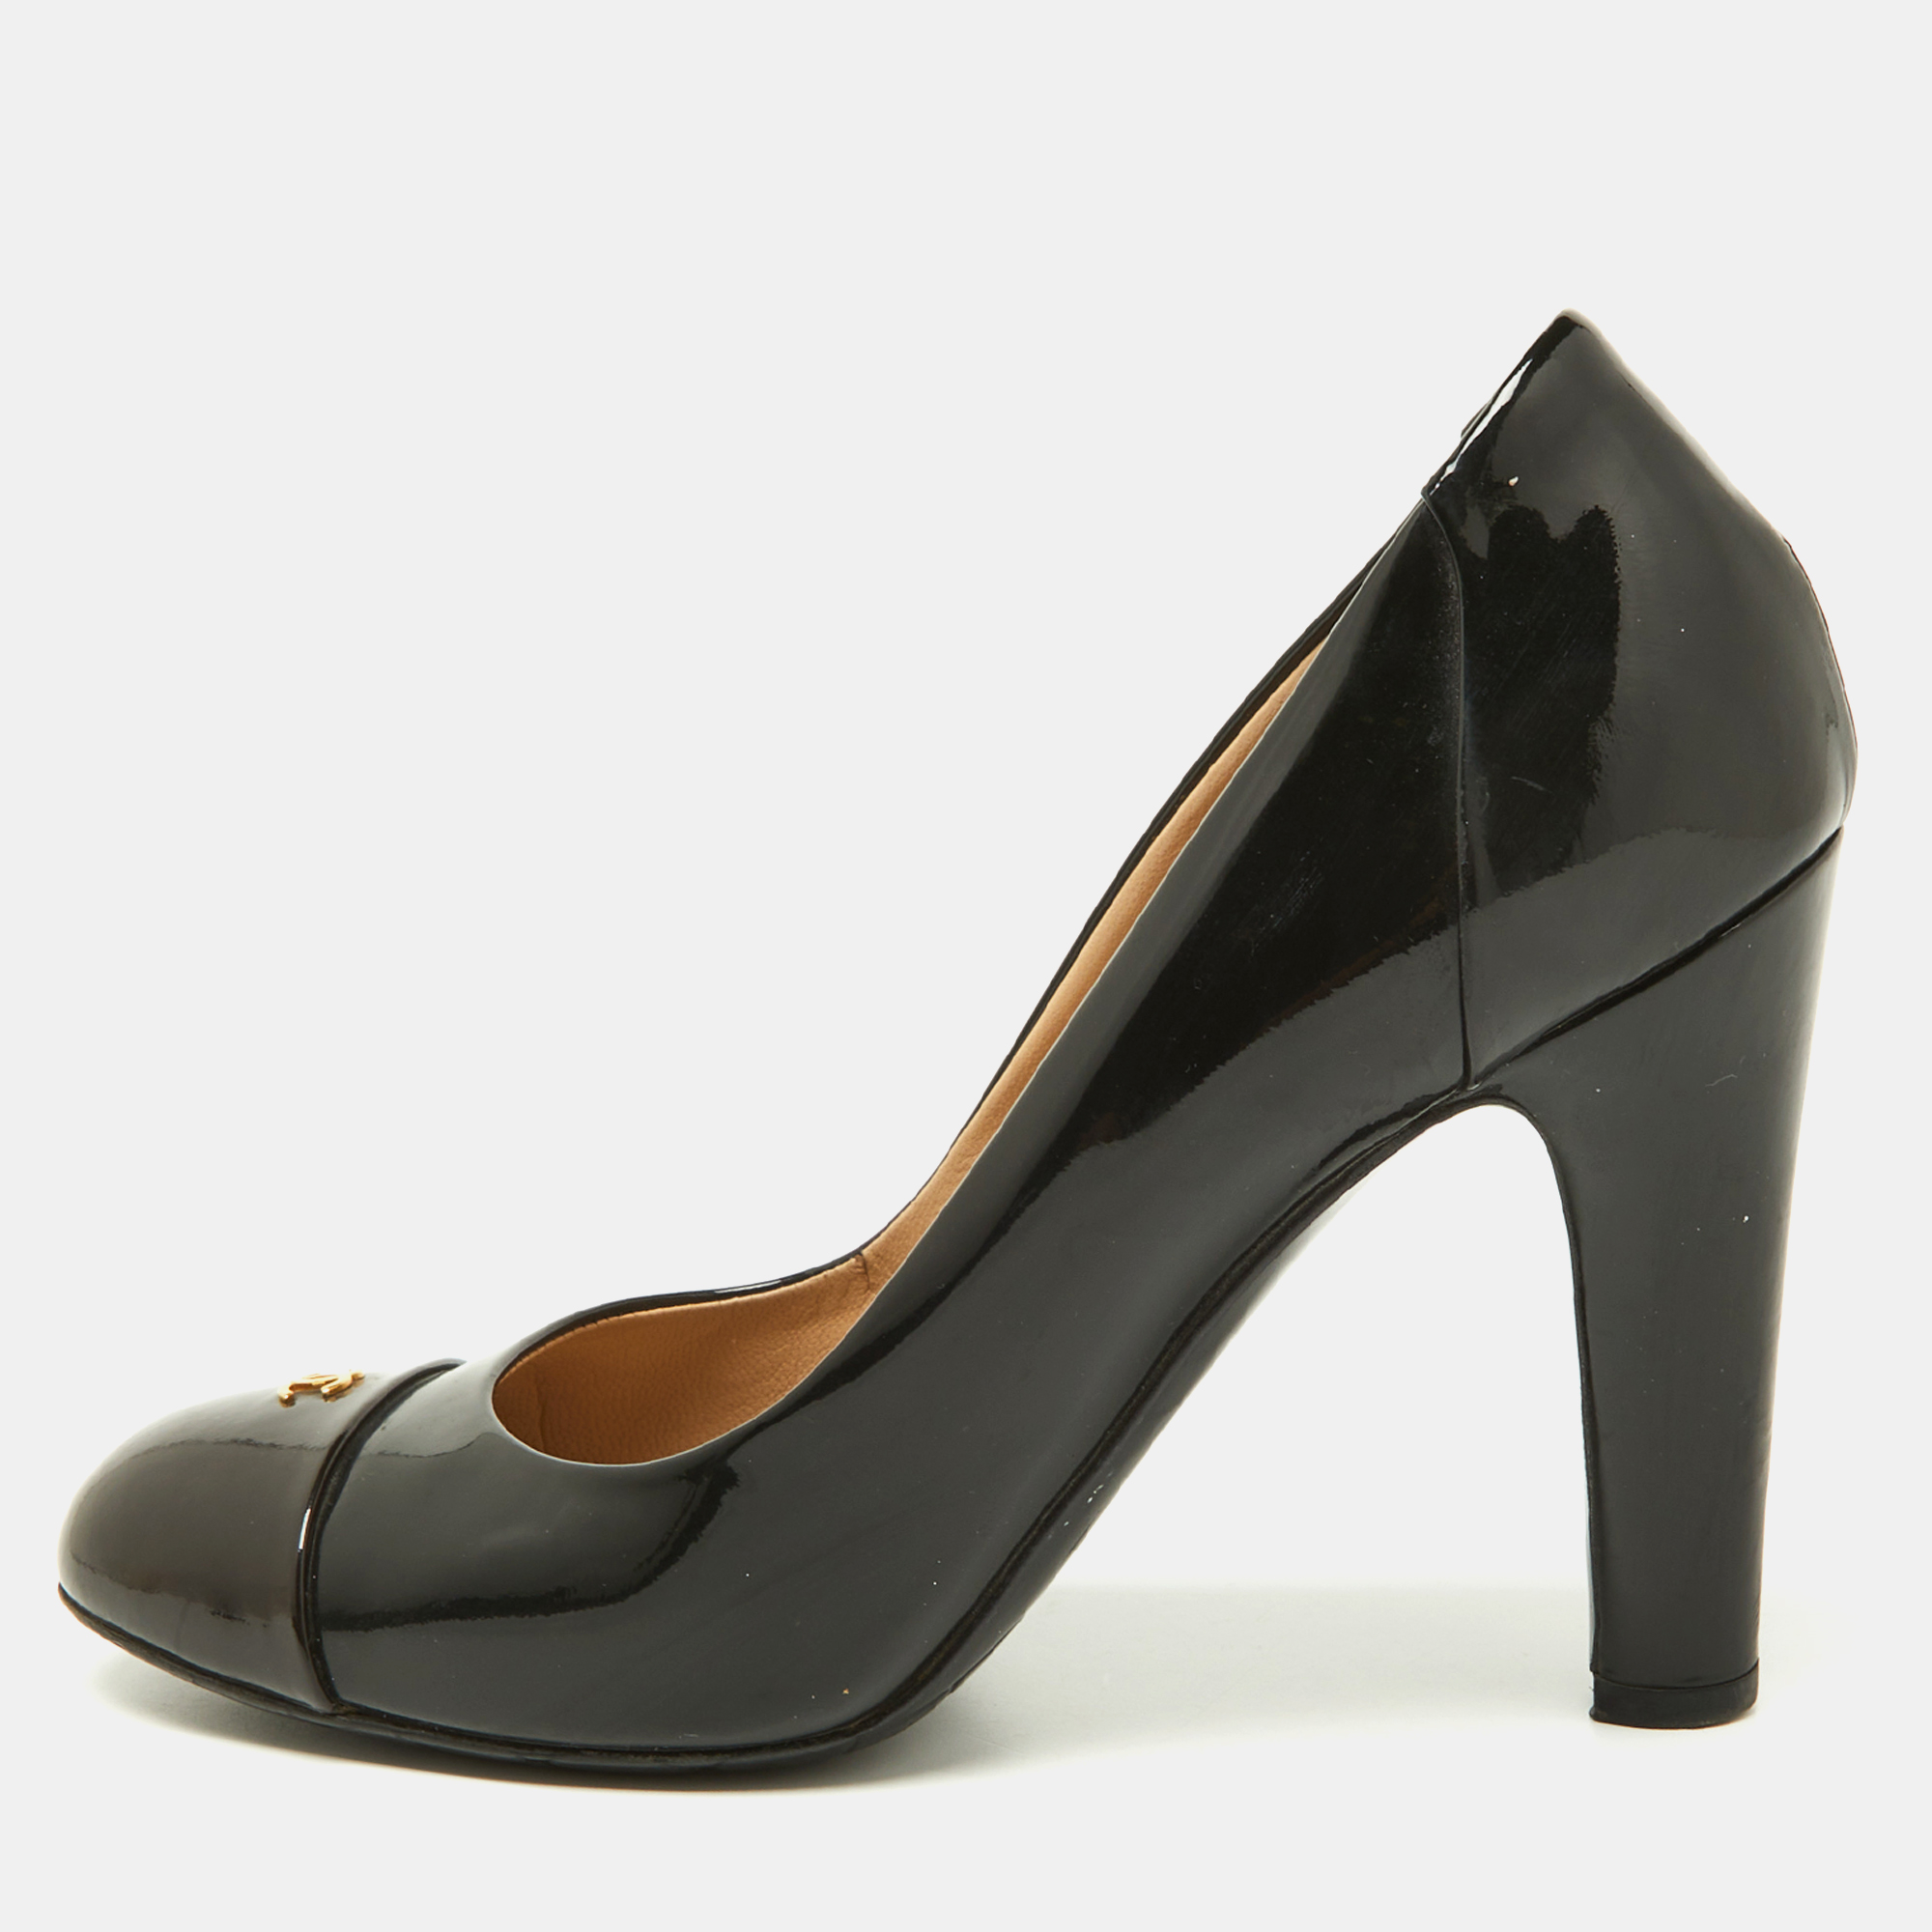 Chanel black/brown patent leather cc cap toe pumps size 36.5